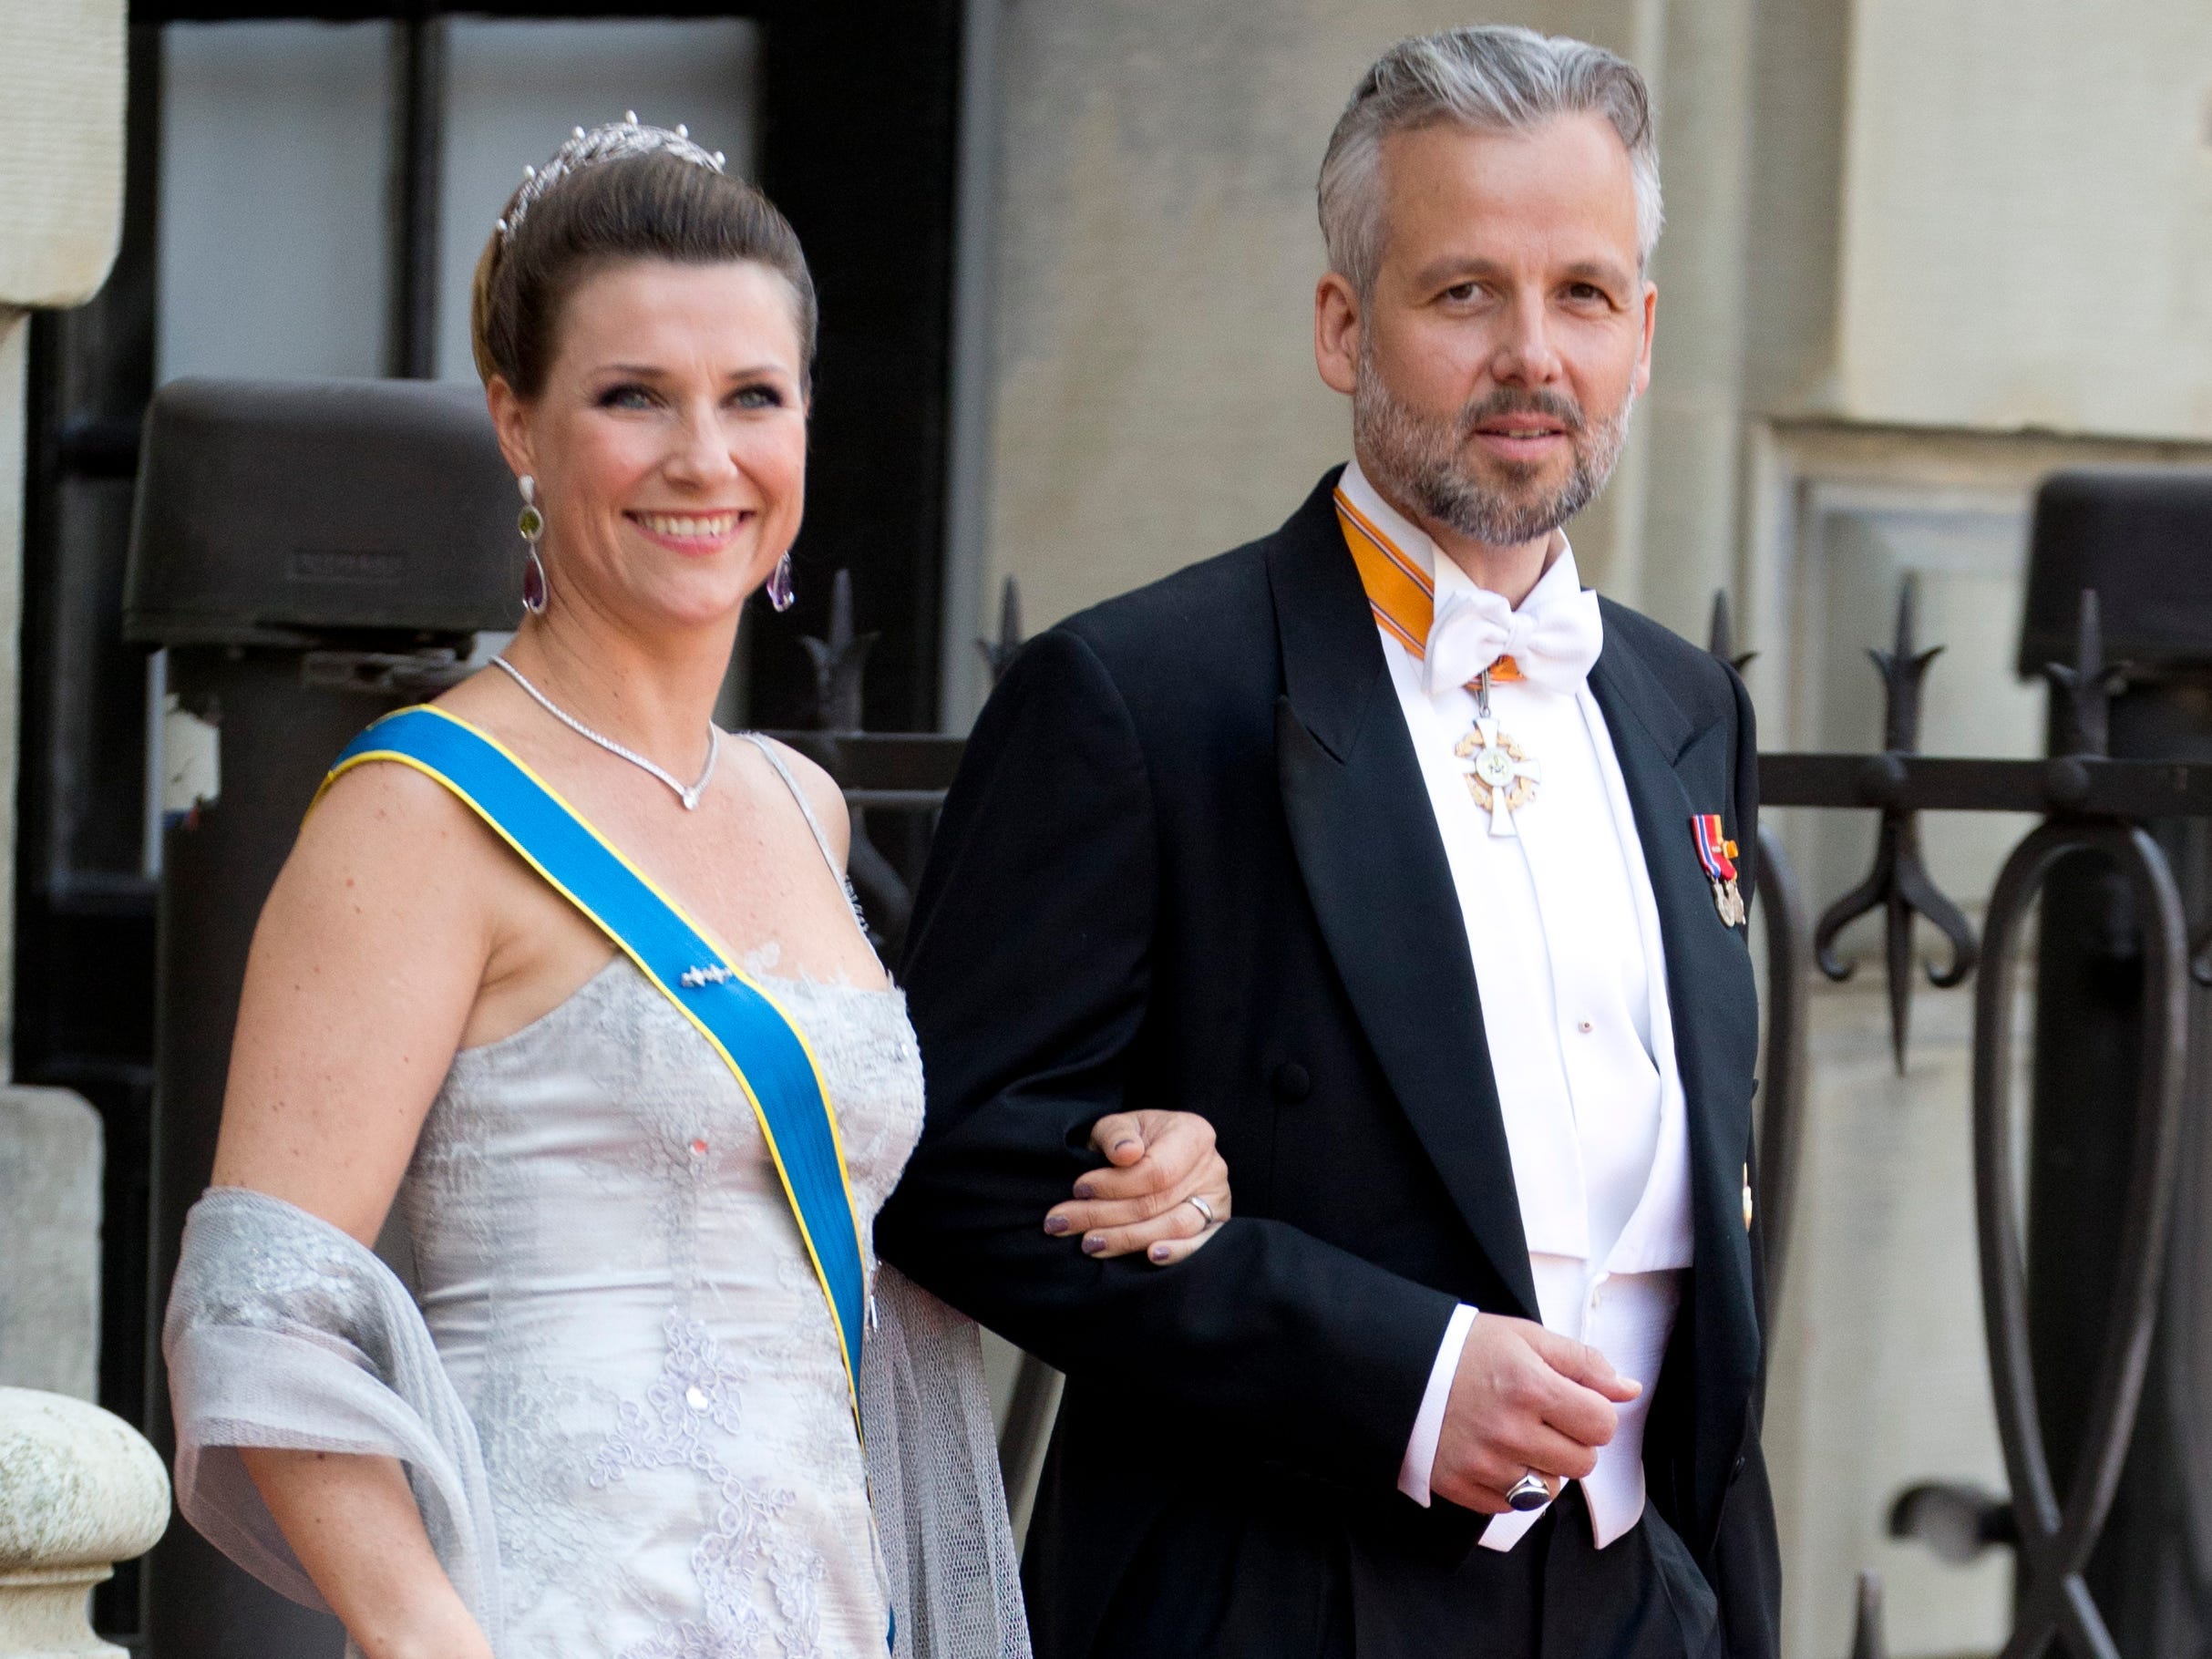 Princess Märtha Louise of Norway, and Ari Behn at The Royal Palace in Stockholm.